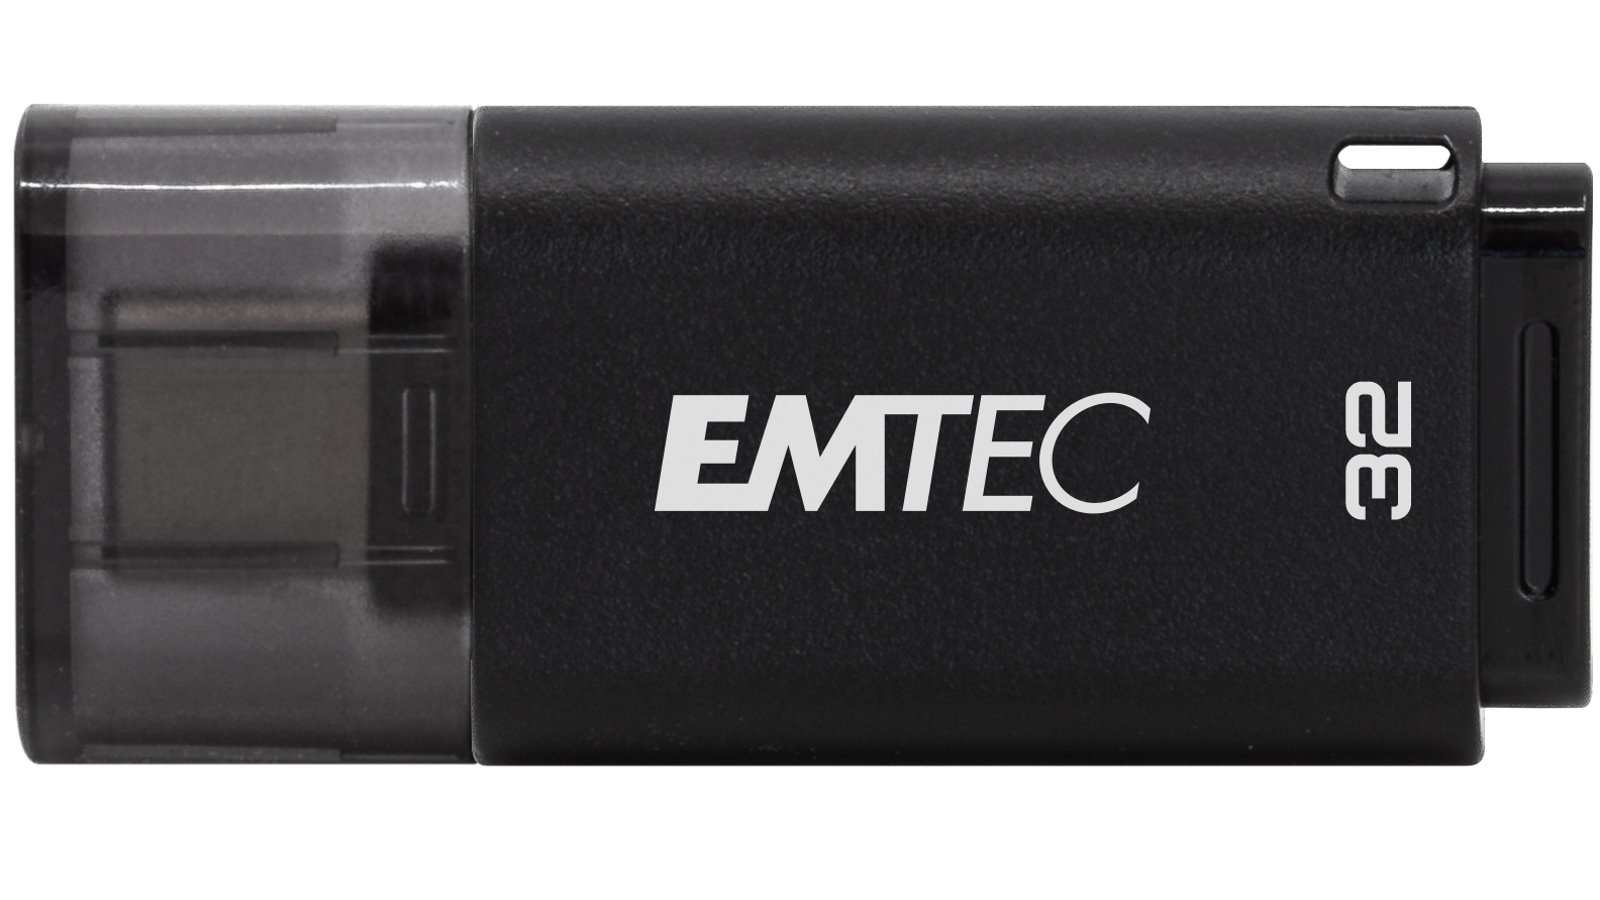 Emtec USB Flash Drives | Harvey Norman